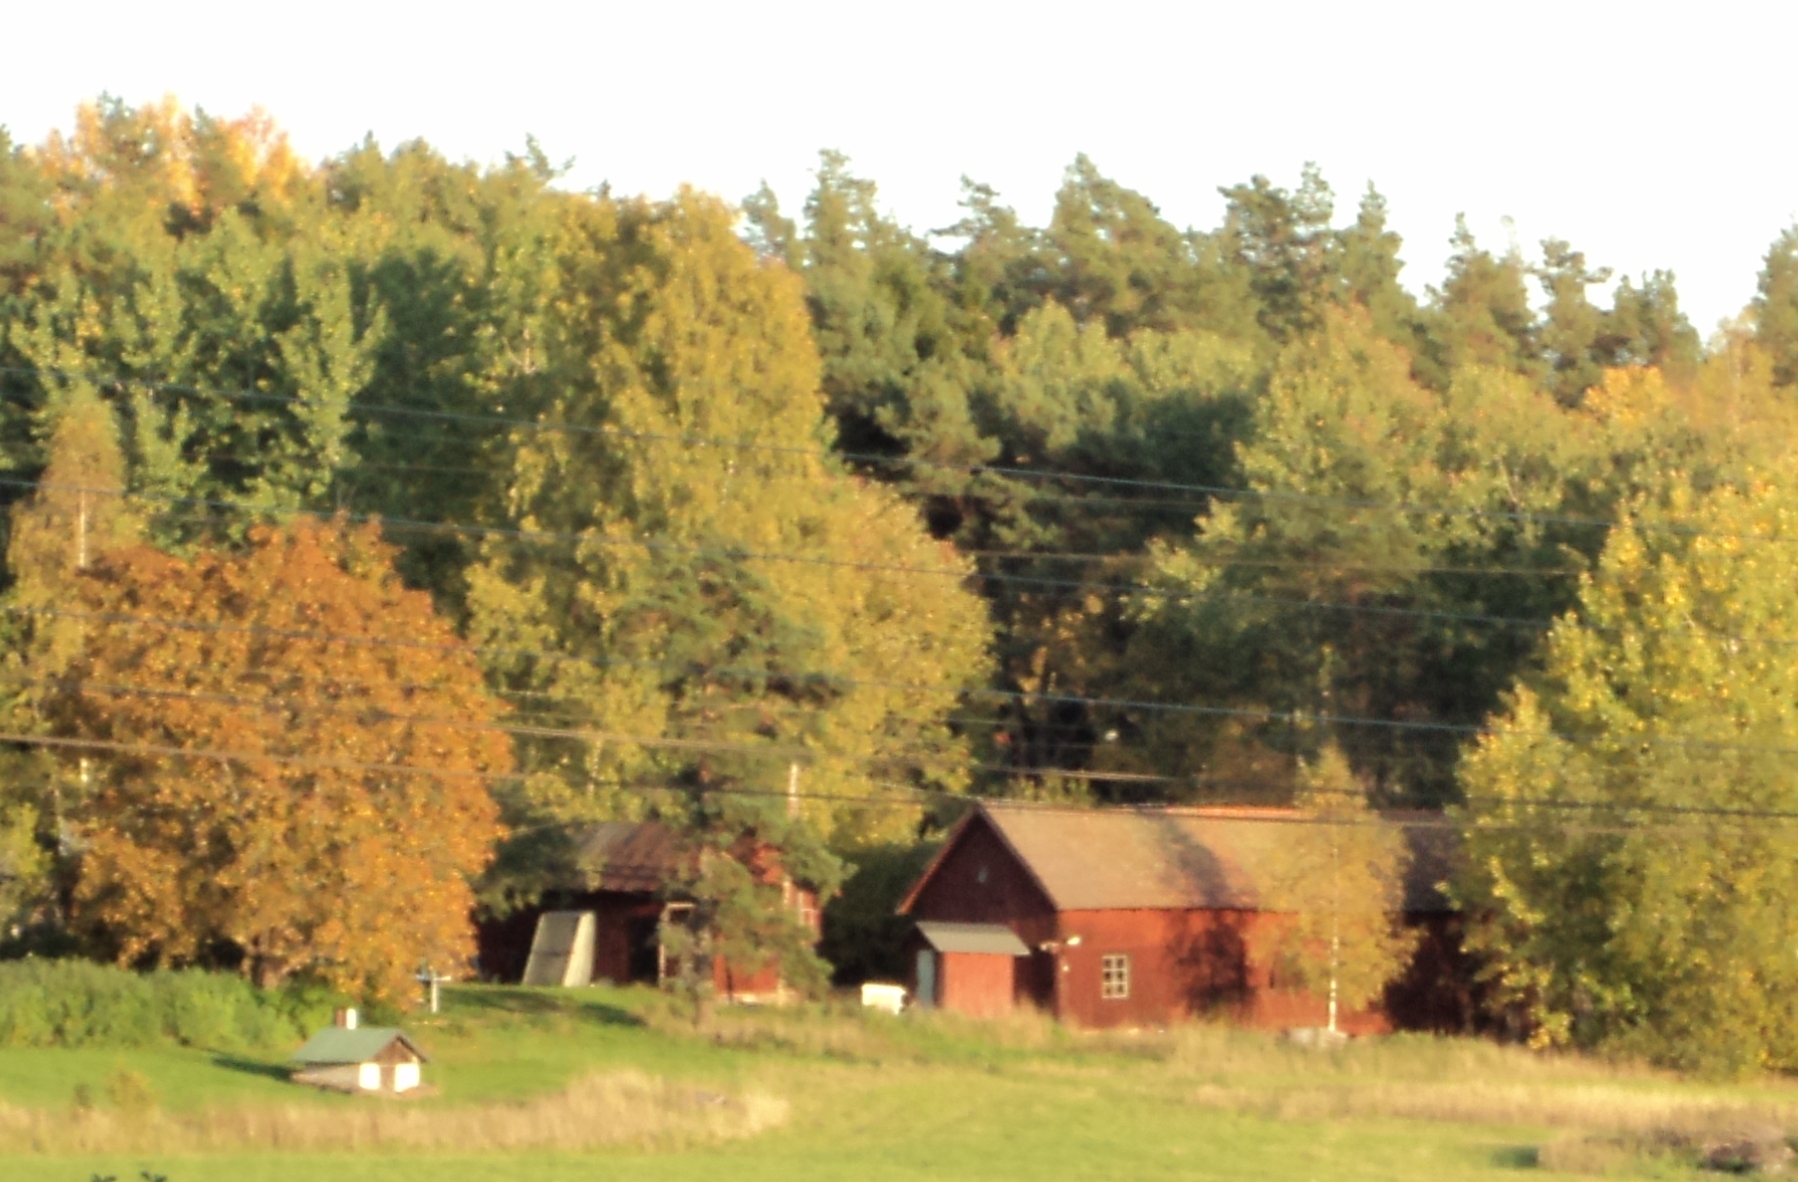 La petite maison (suédoise) dans la prairie.